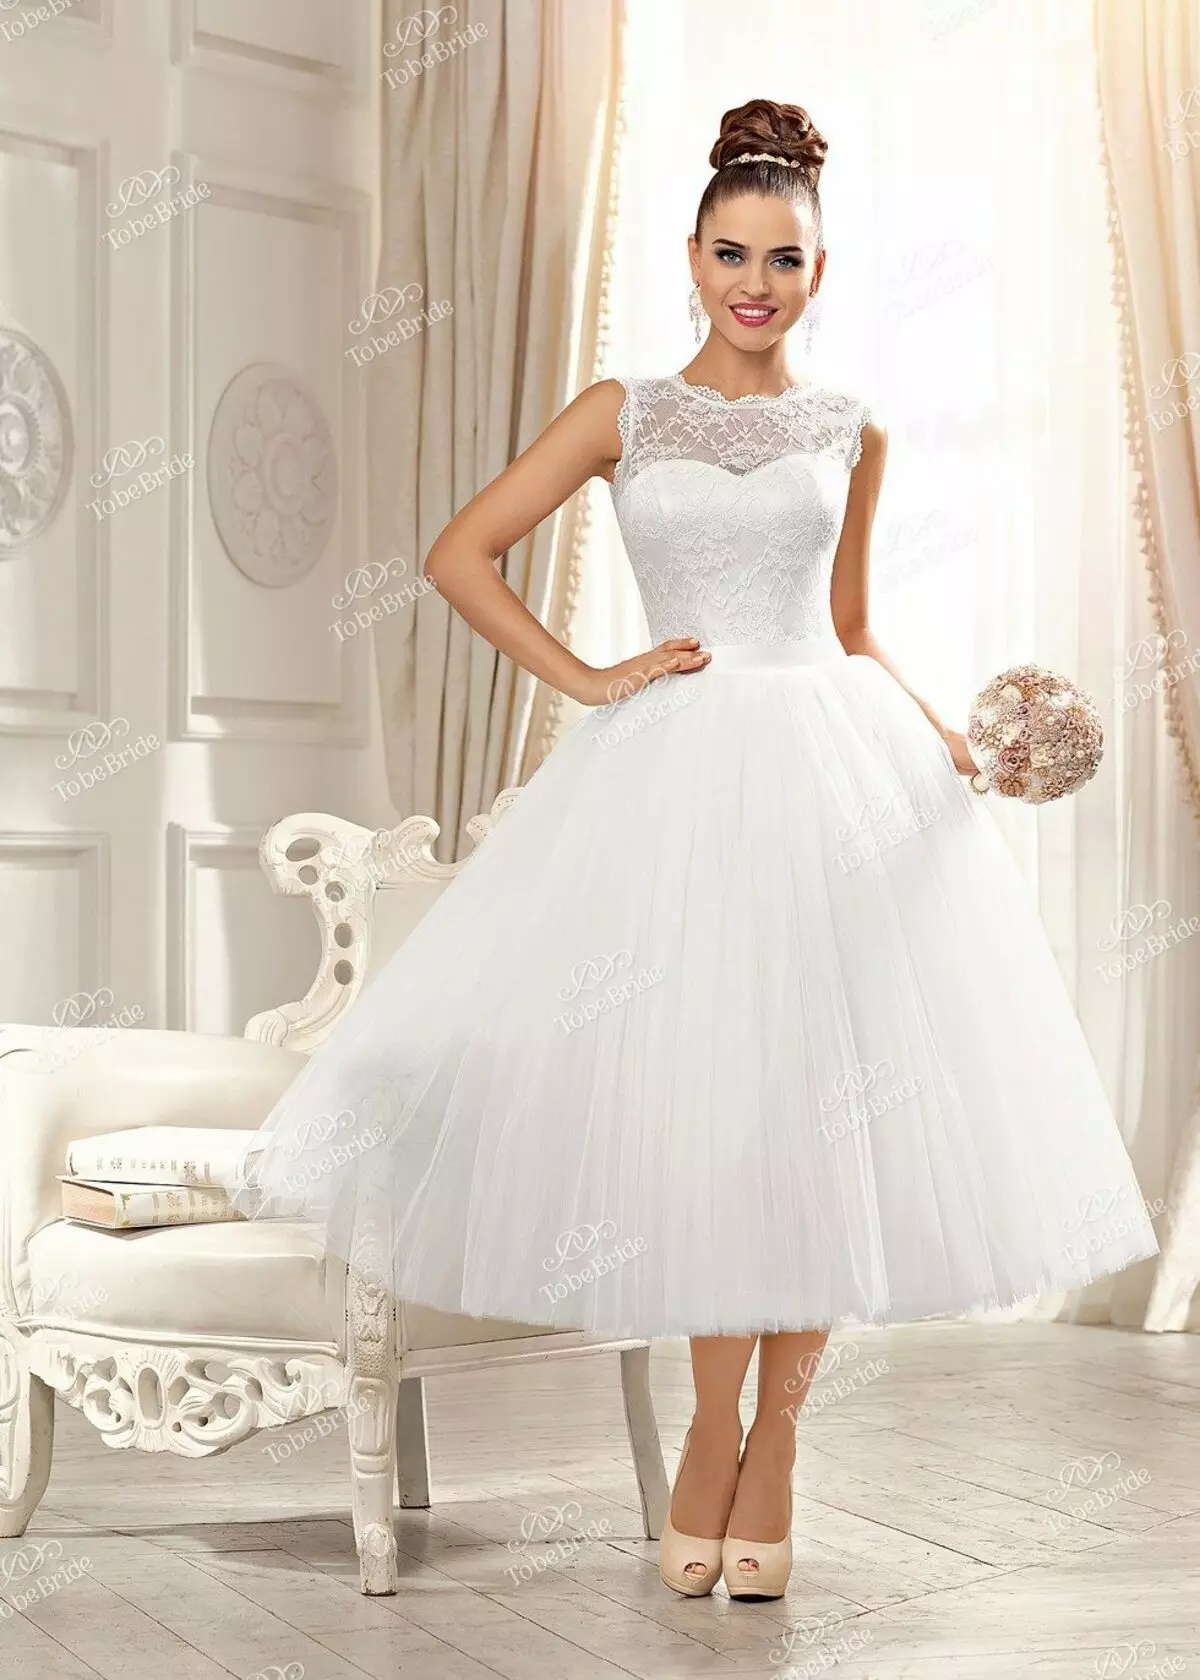 Vestido de novia de la colección nupcial 2014 corto